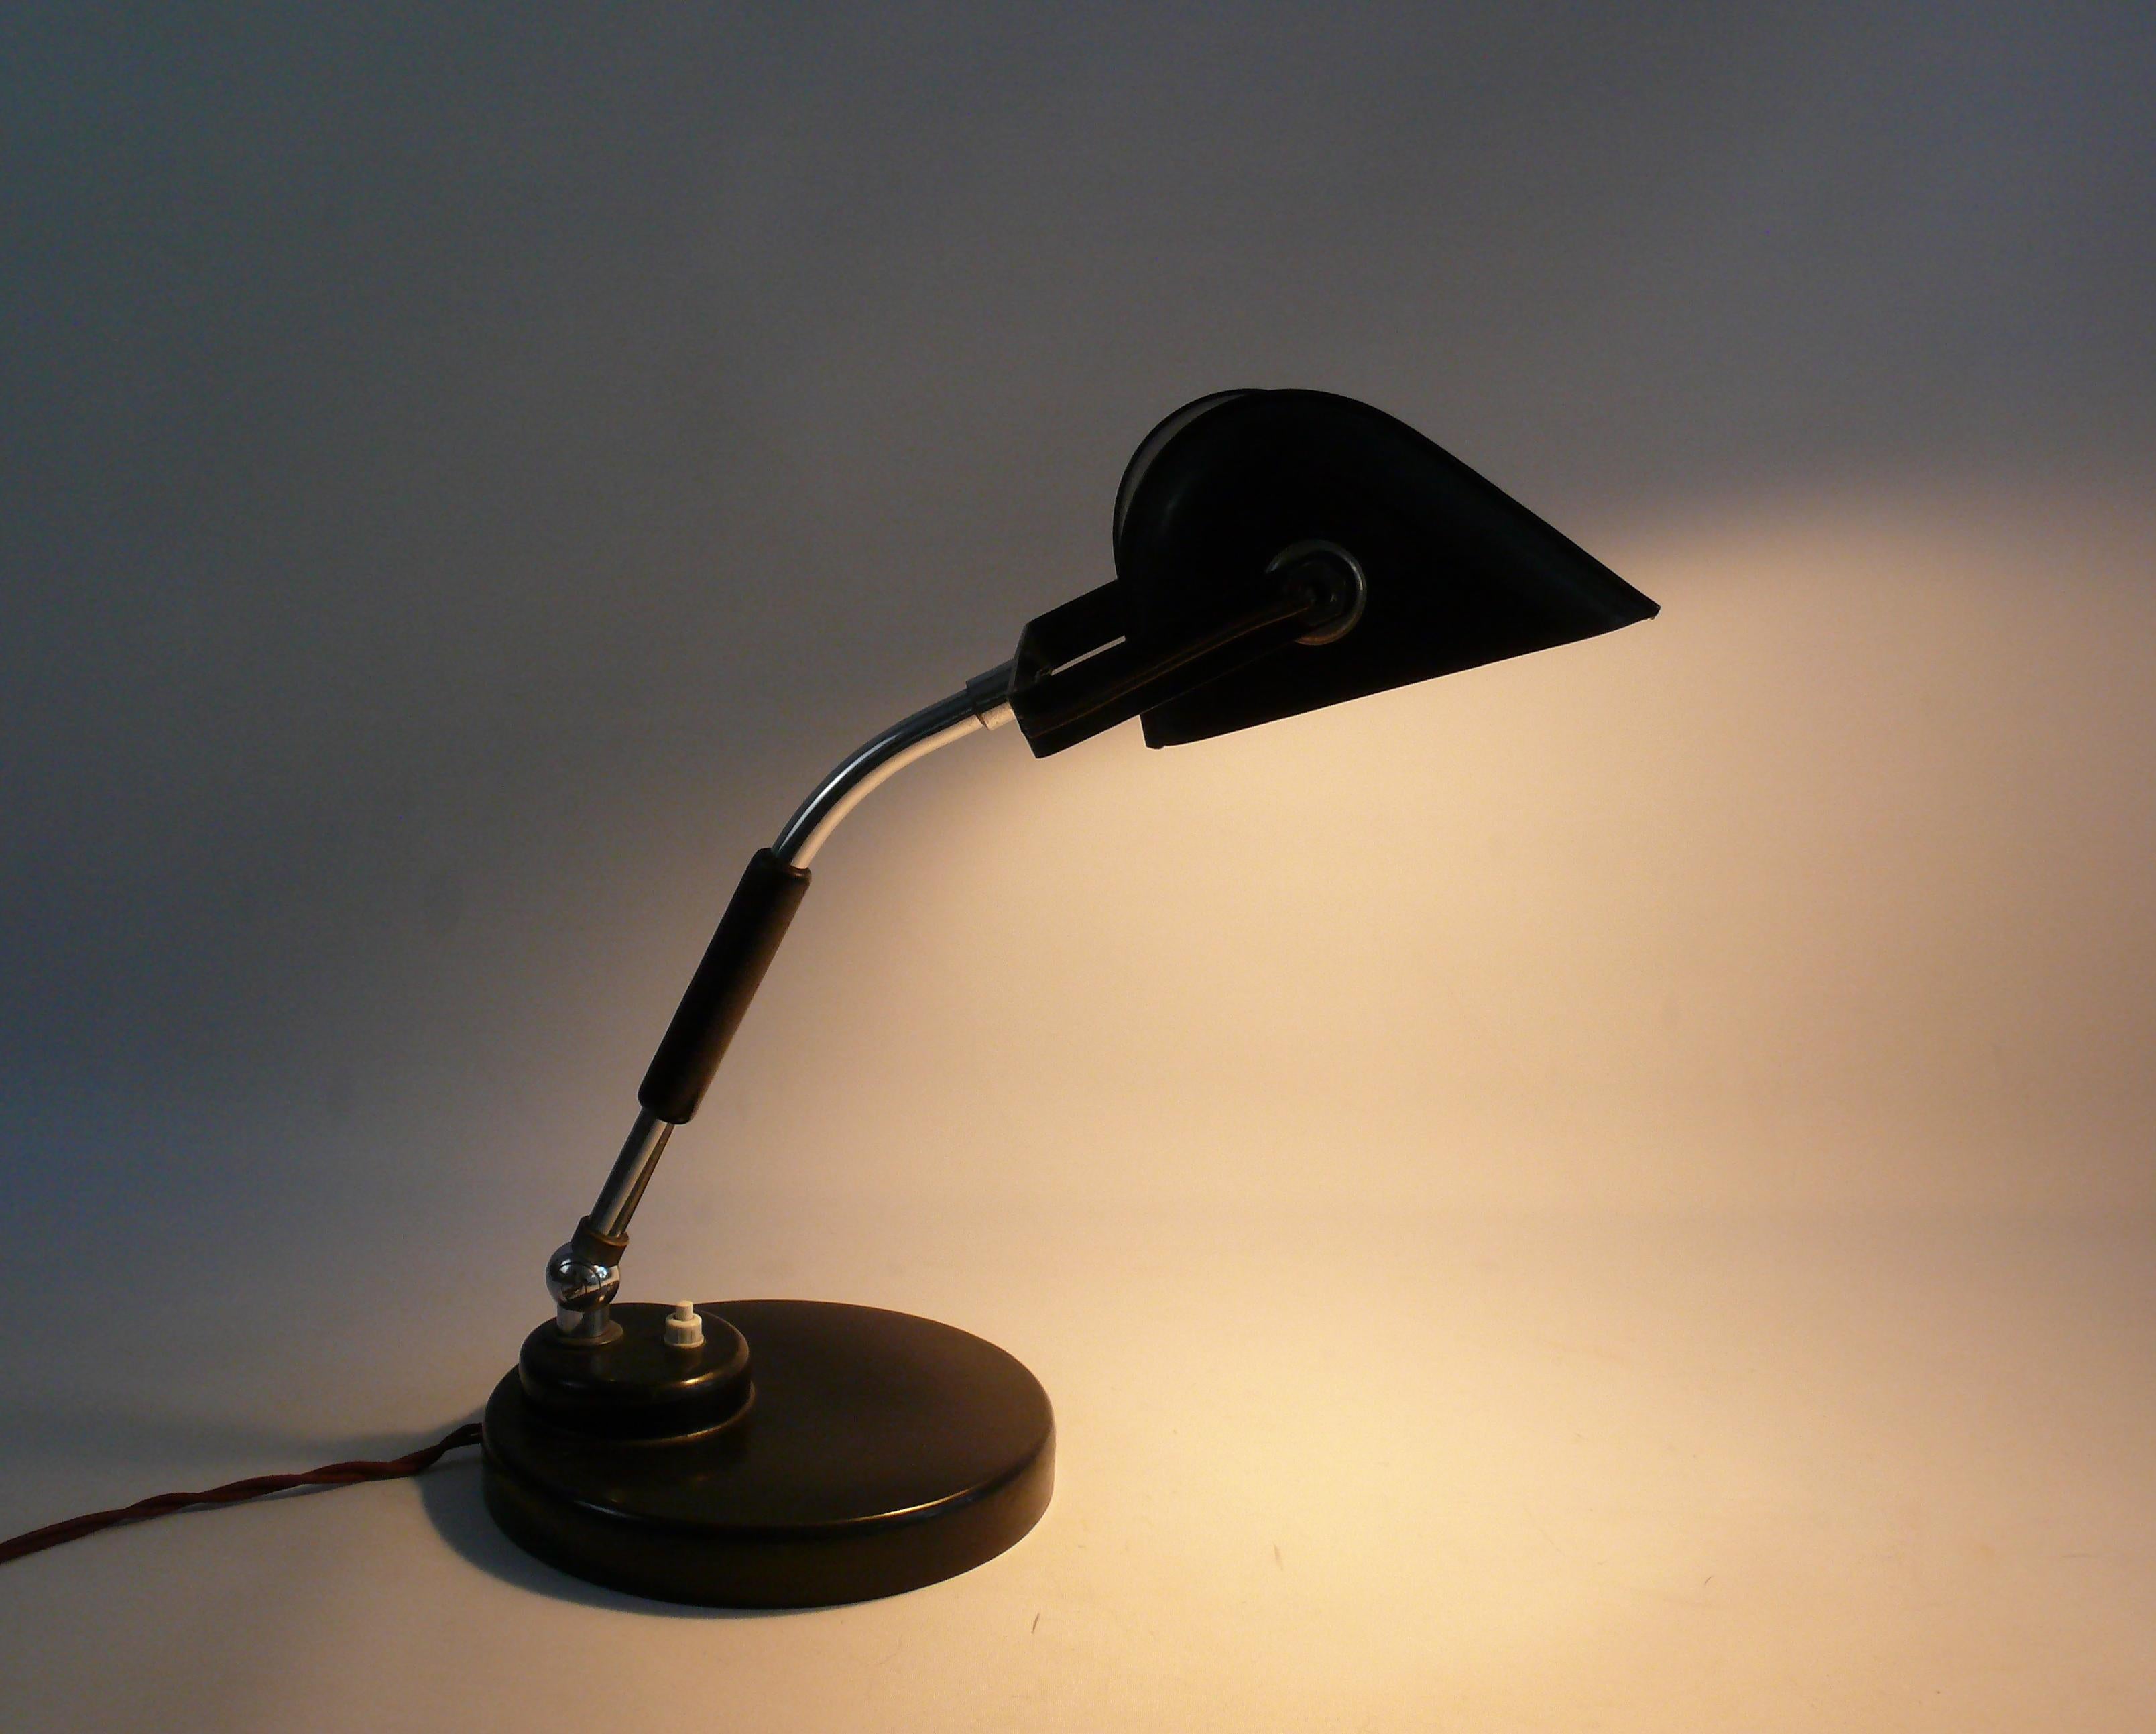 Gut erhaltene Bankerlampe/Tischlampe aus den 1930er Jahren im Bauhaus-Stil. Hersteller wahrscheinlich Koranda - Österreich. Der Sockel ist aus Bakelit gefertigt. Der Arm ist verchromt und hat einen mit Holz verkleideten Griffbereich. Der Arm kann